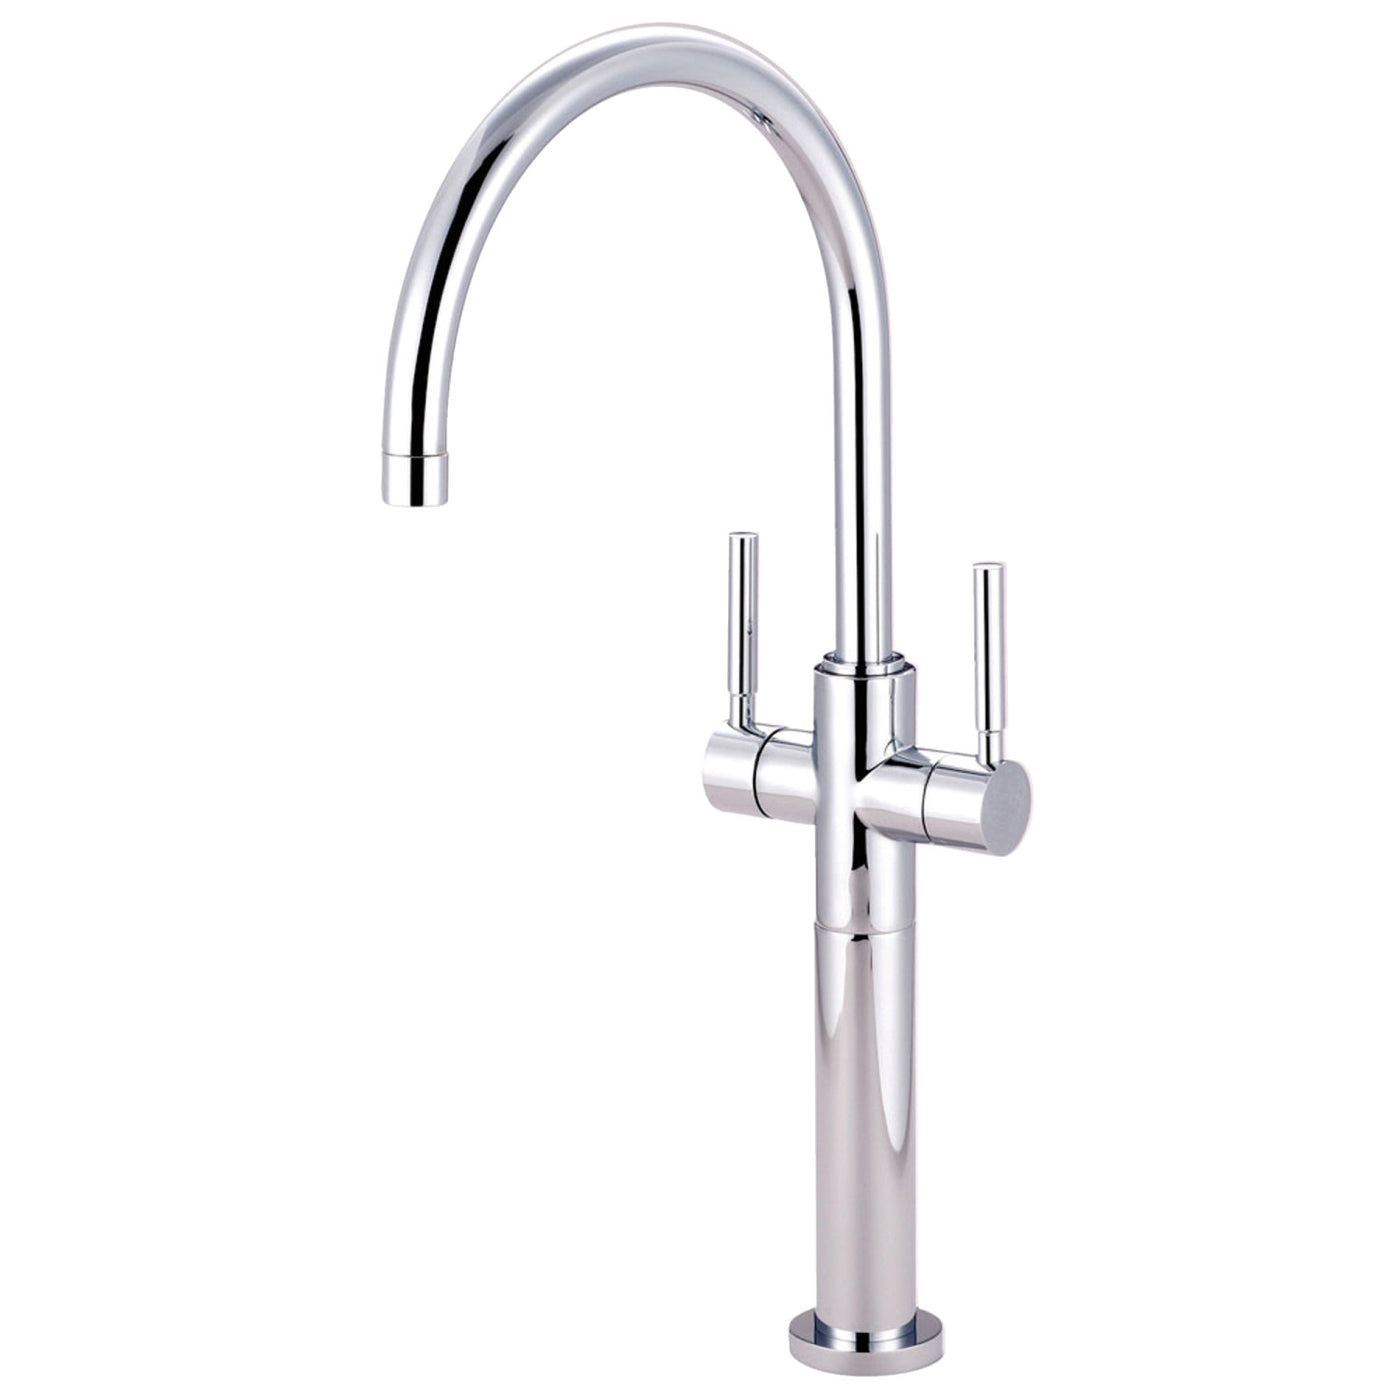 Elements of Design ES8091DL Vessel Sink Faucet, Polished Chrome